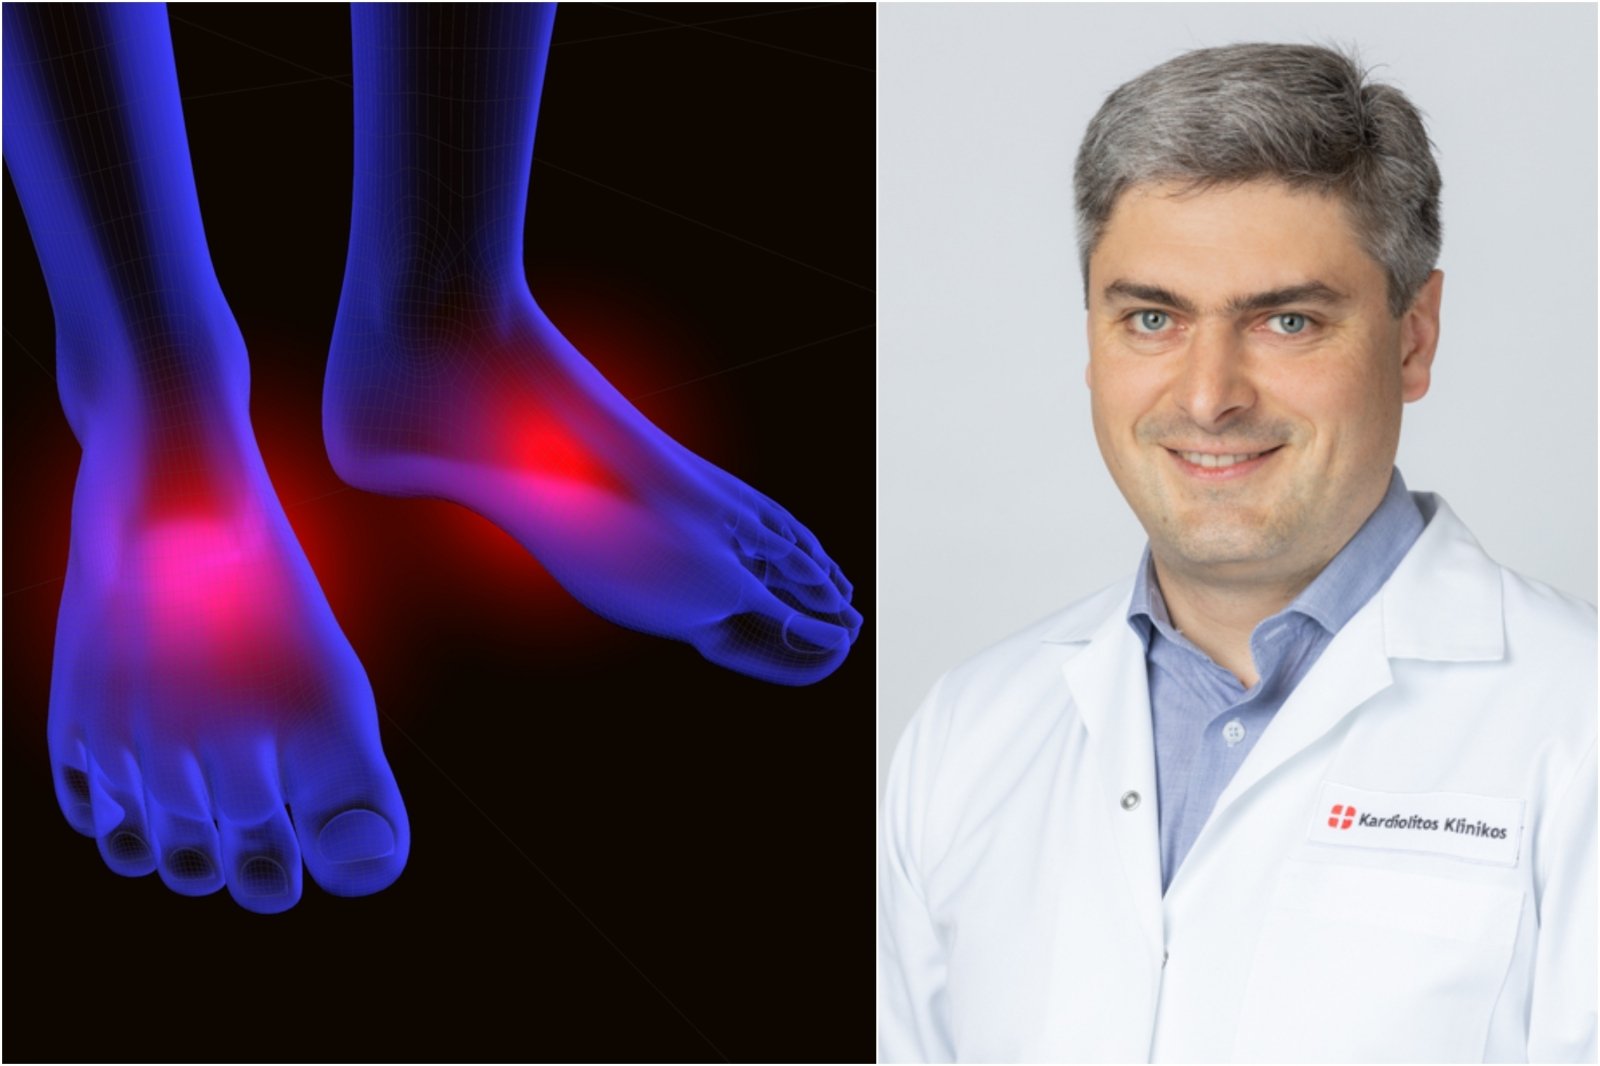 liga pėdos gydymo sąnarių